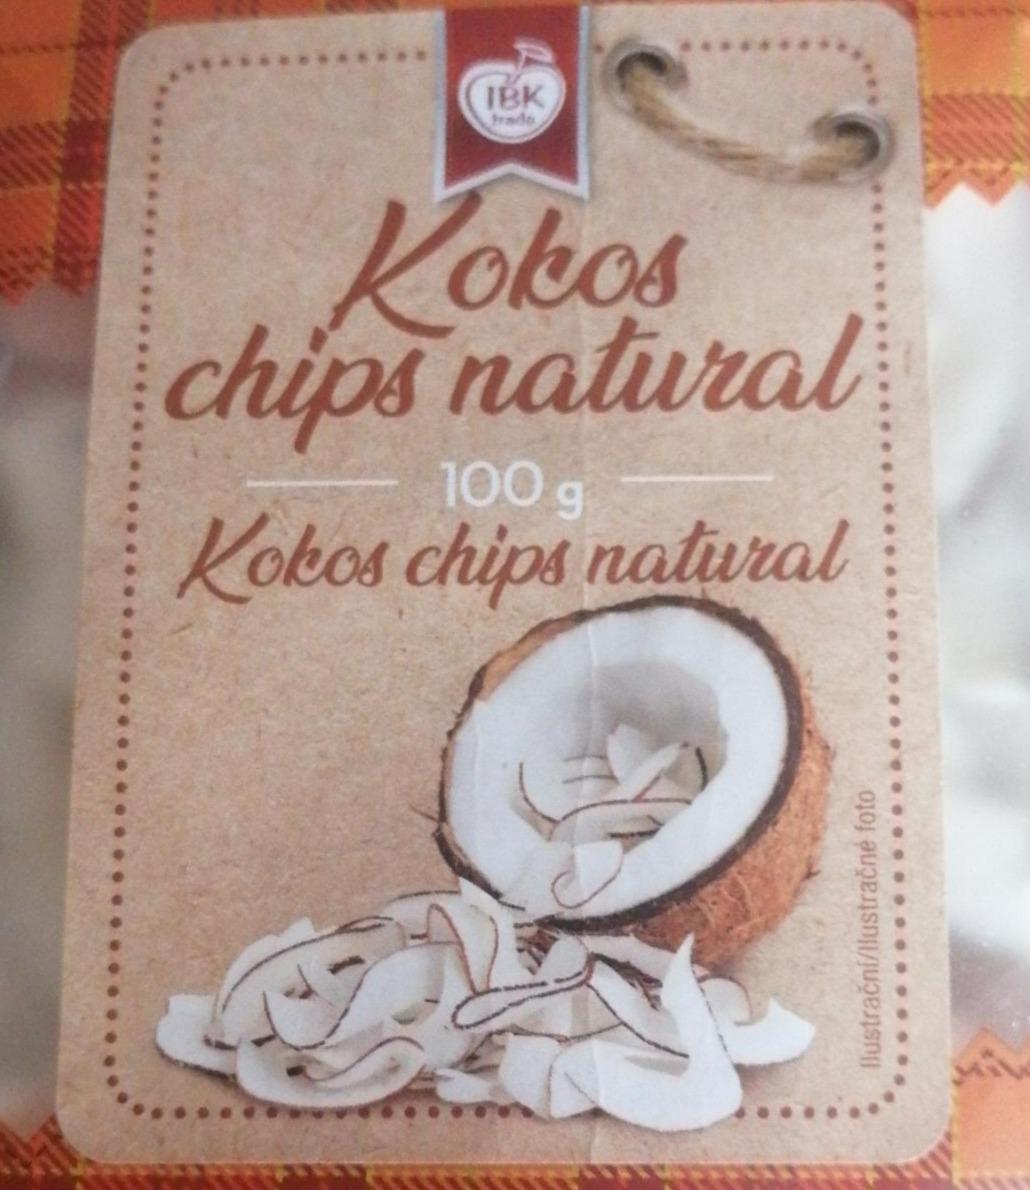 Fotografie - Kokos chips natural IBK trade